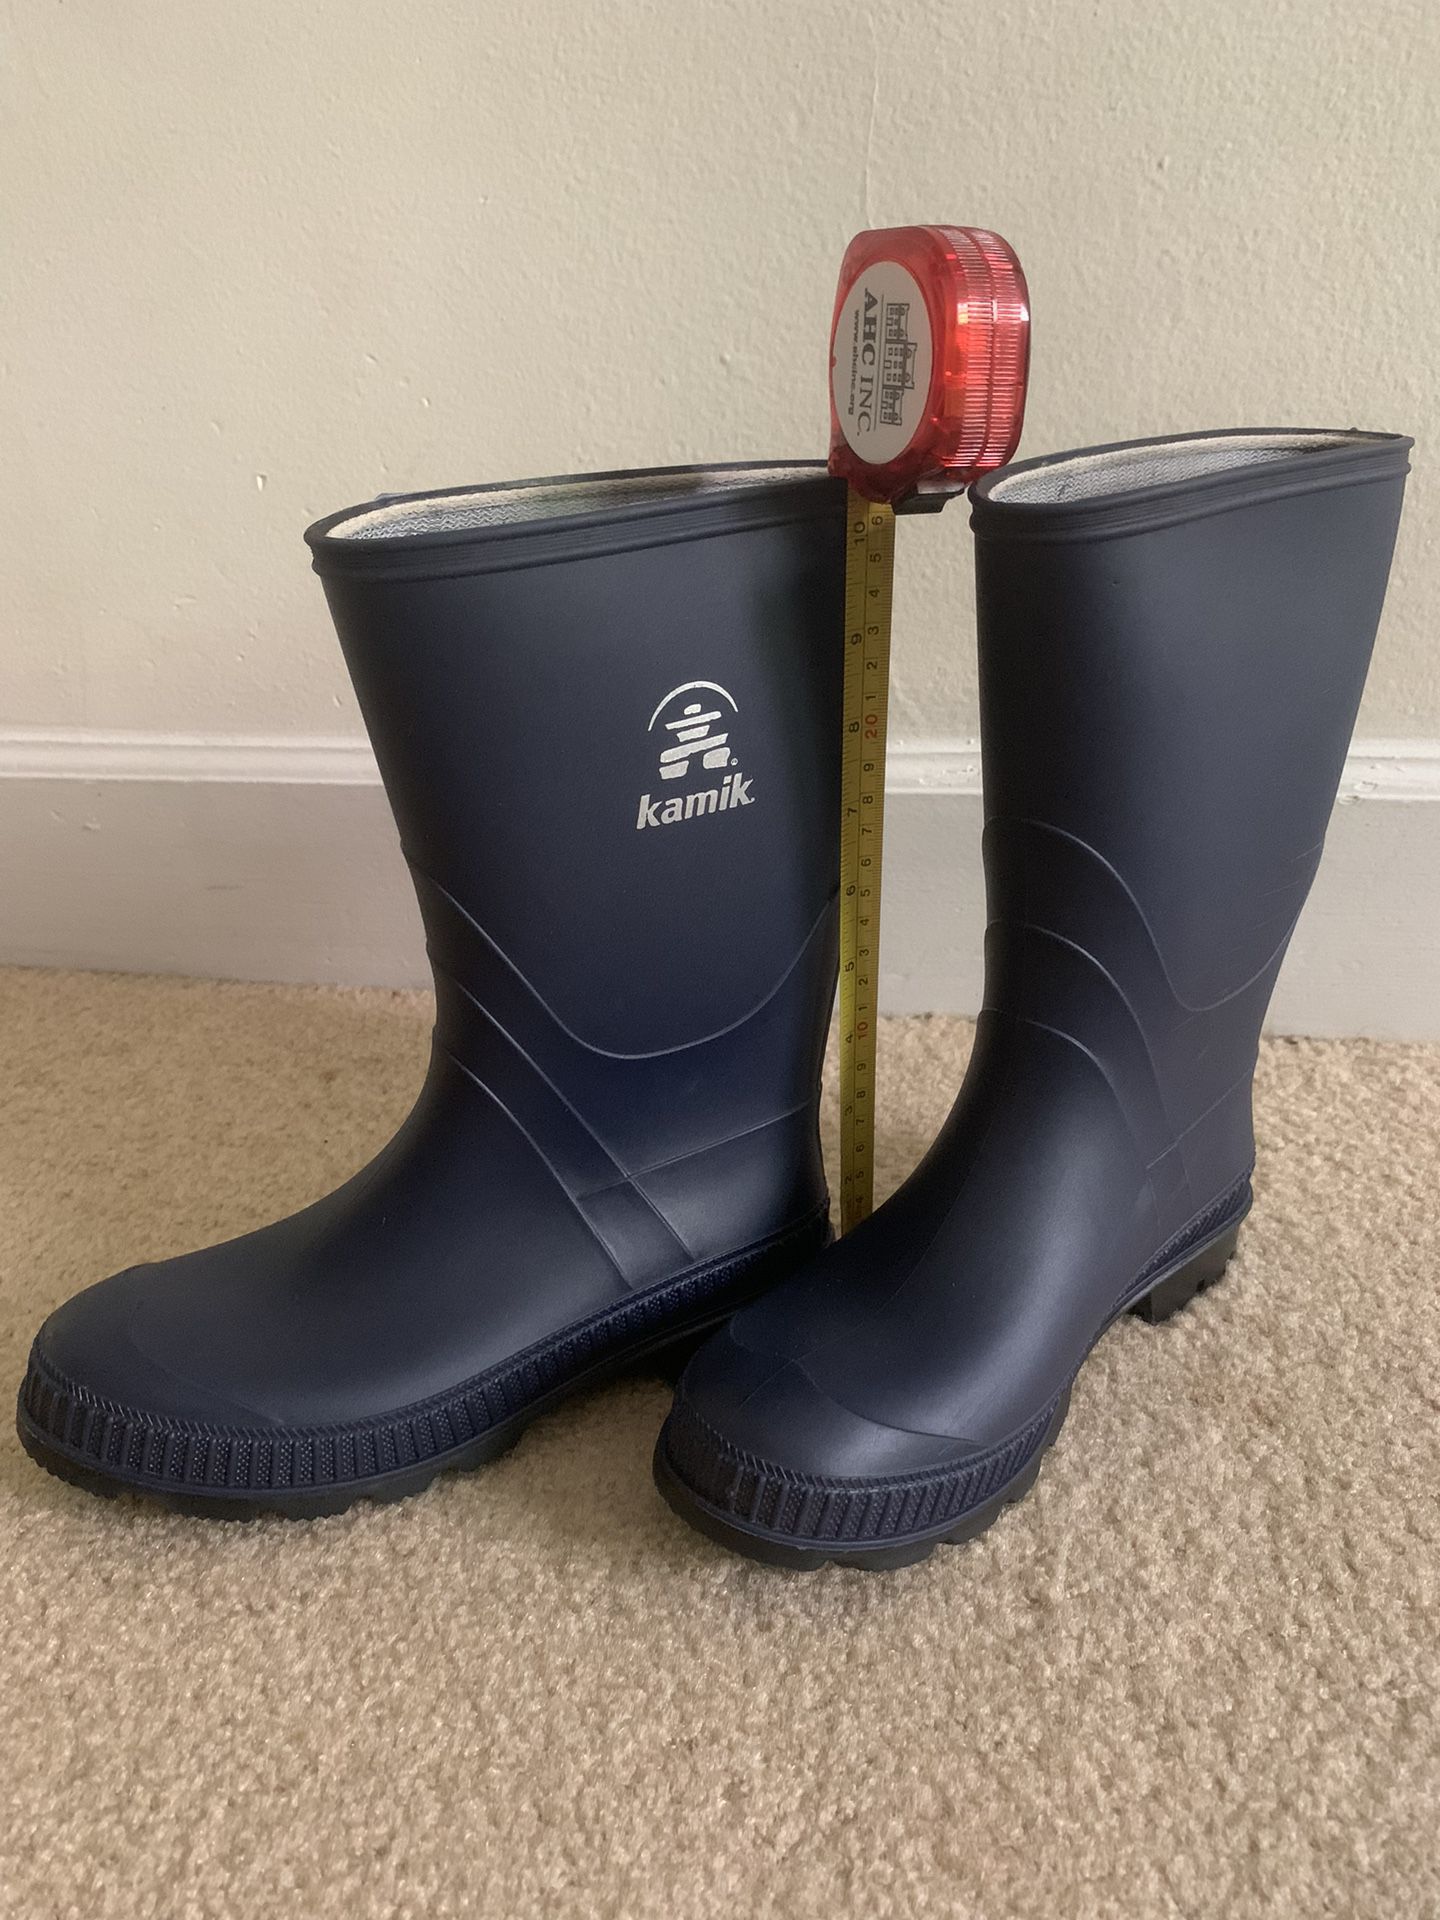 Rain boots for boys size 6 blue color Kamik